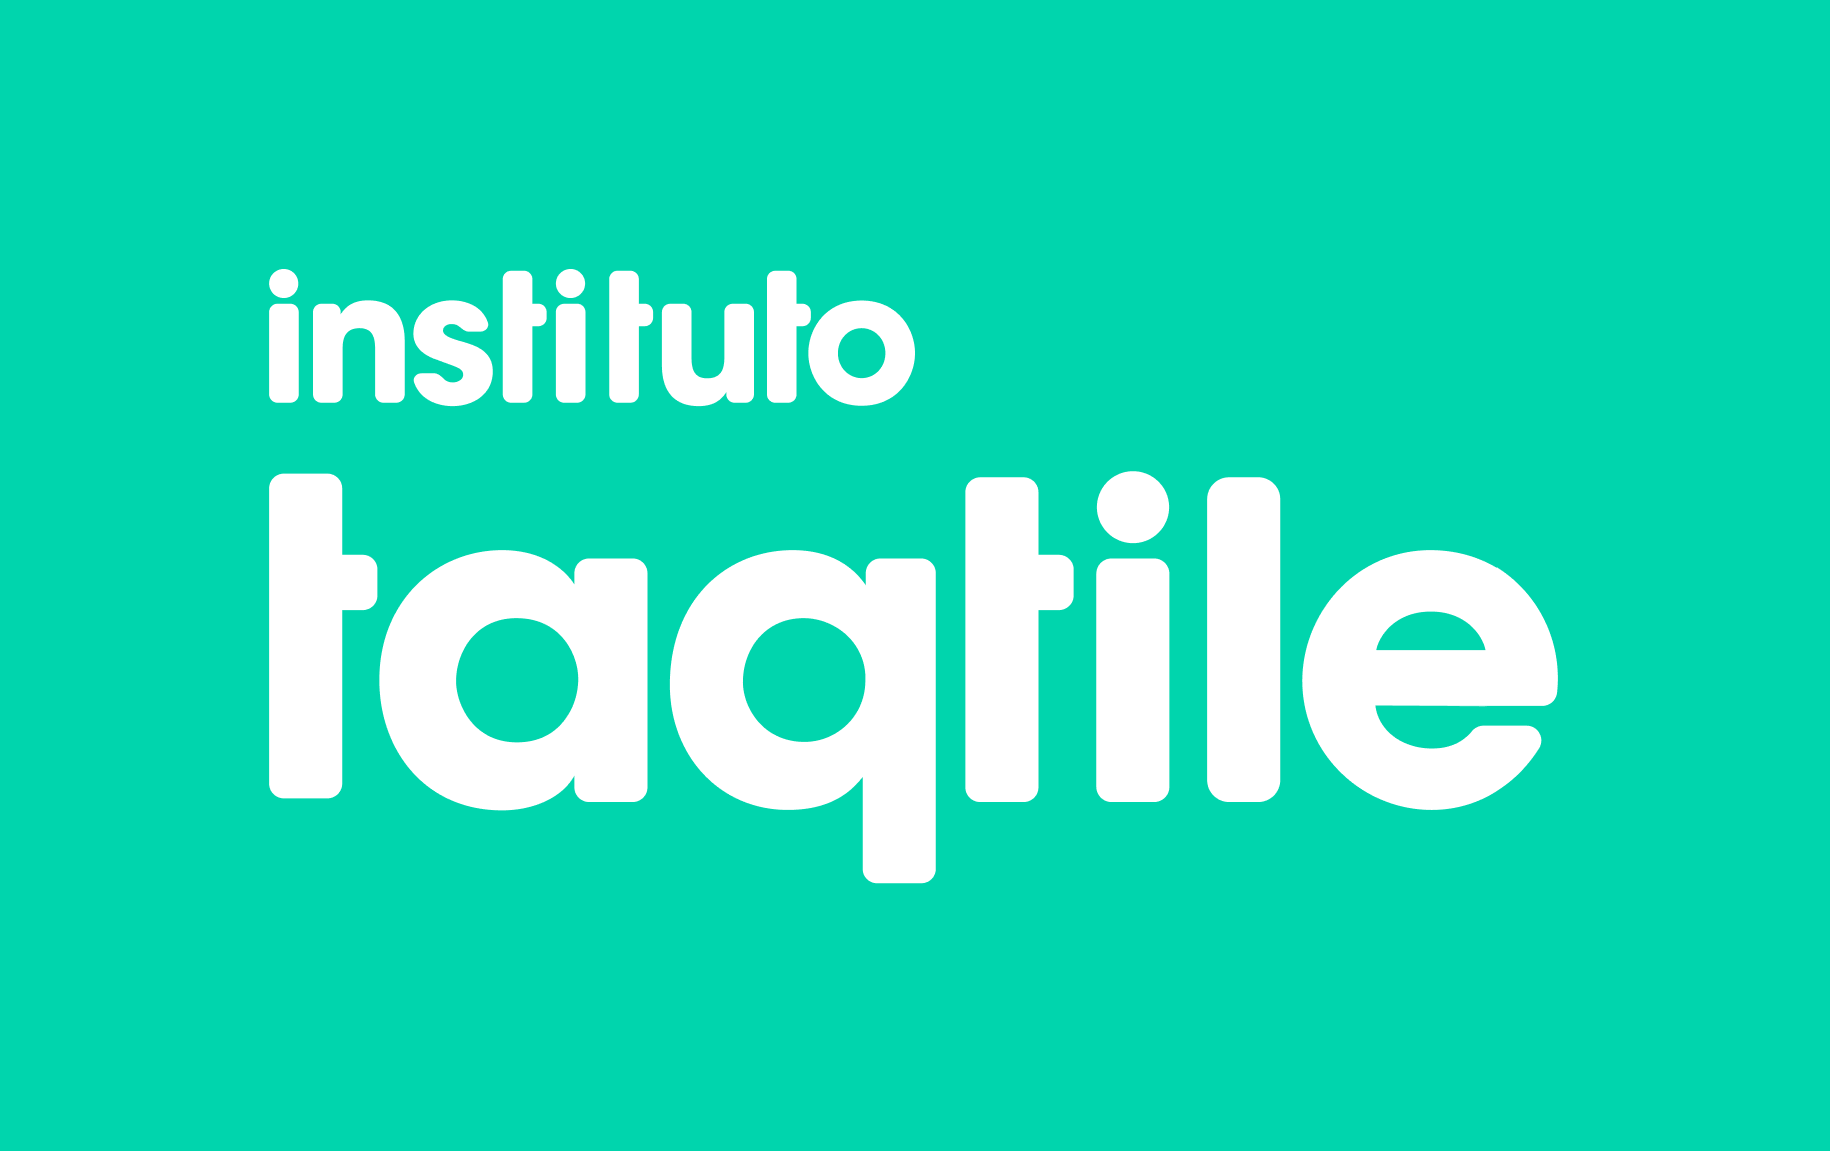 Instituto Taqtile